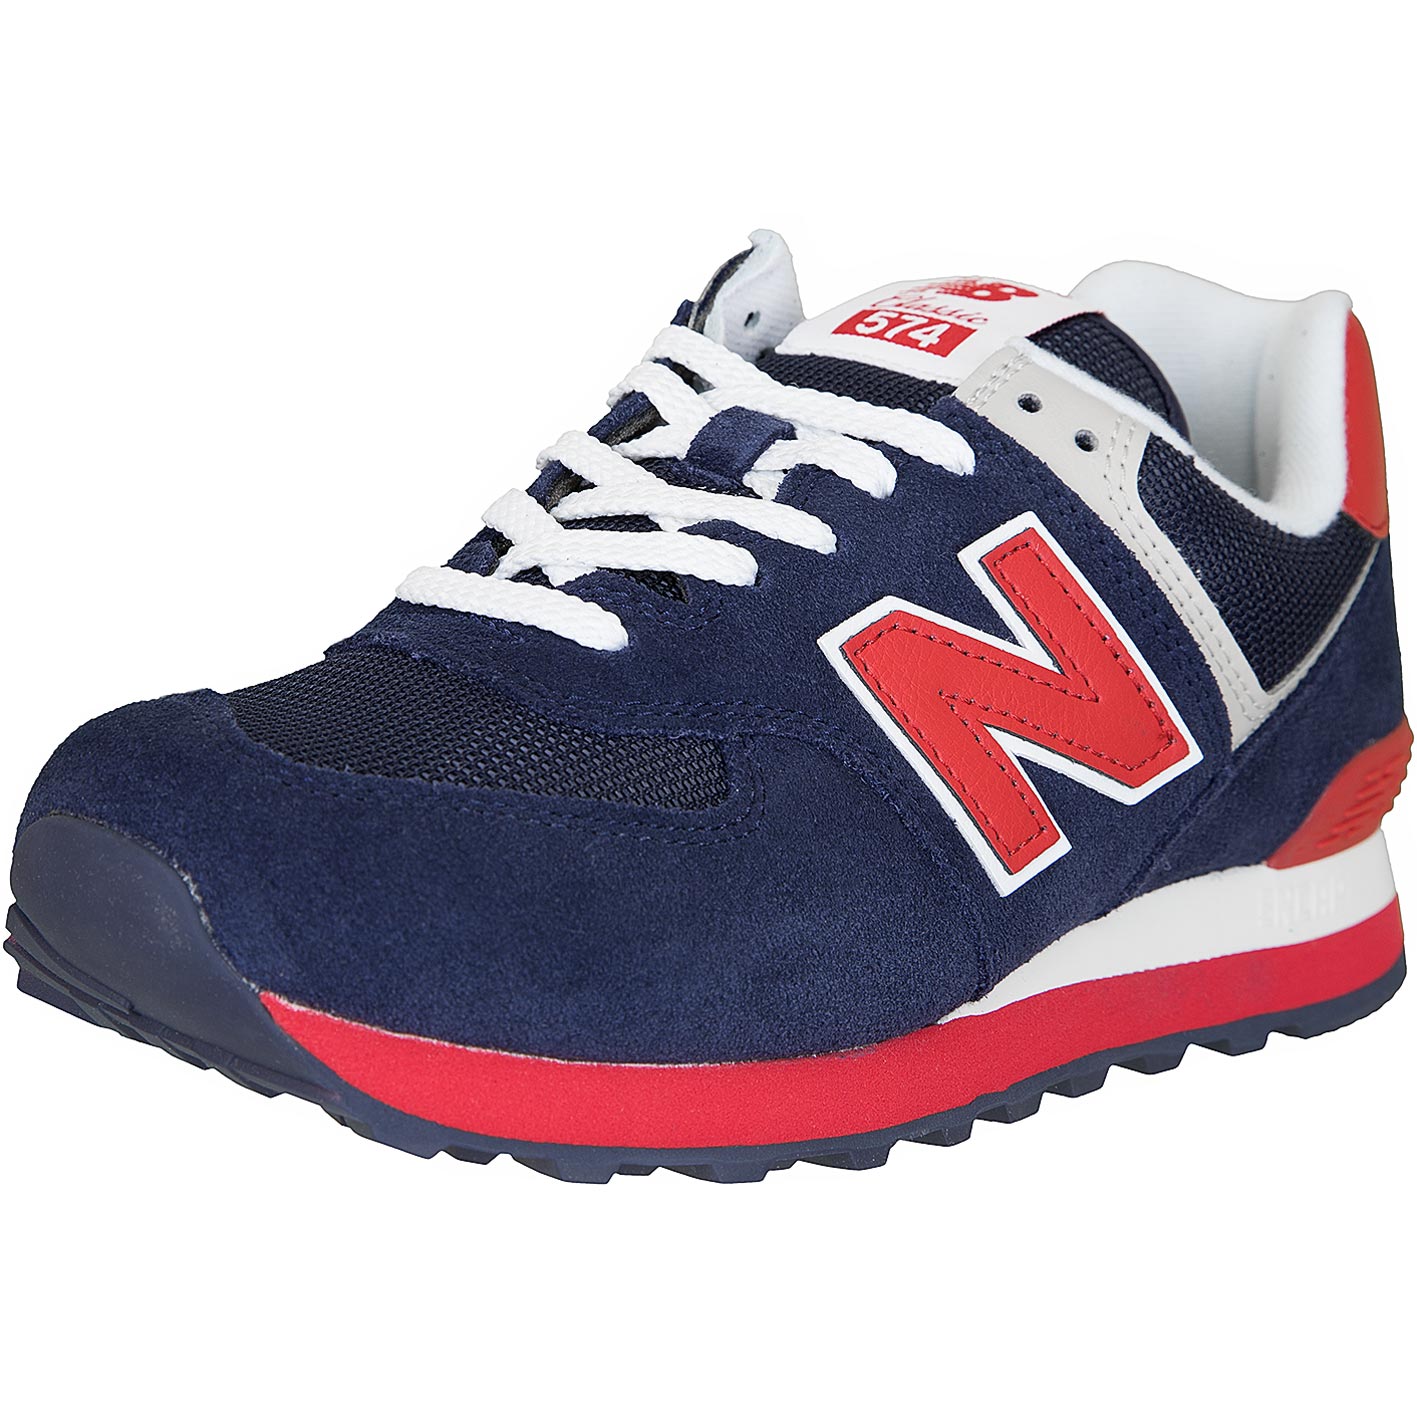 ☆ New Balance Sneaker 574 Leder/Textil dunkelblau/rot - hier bestellen!